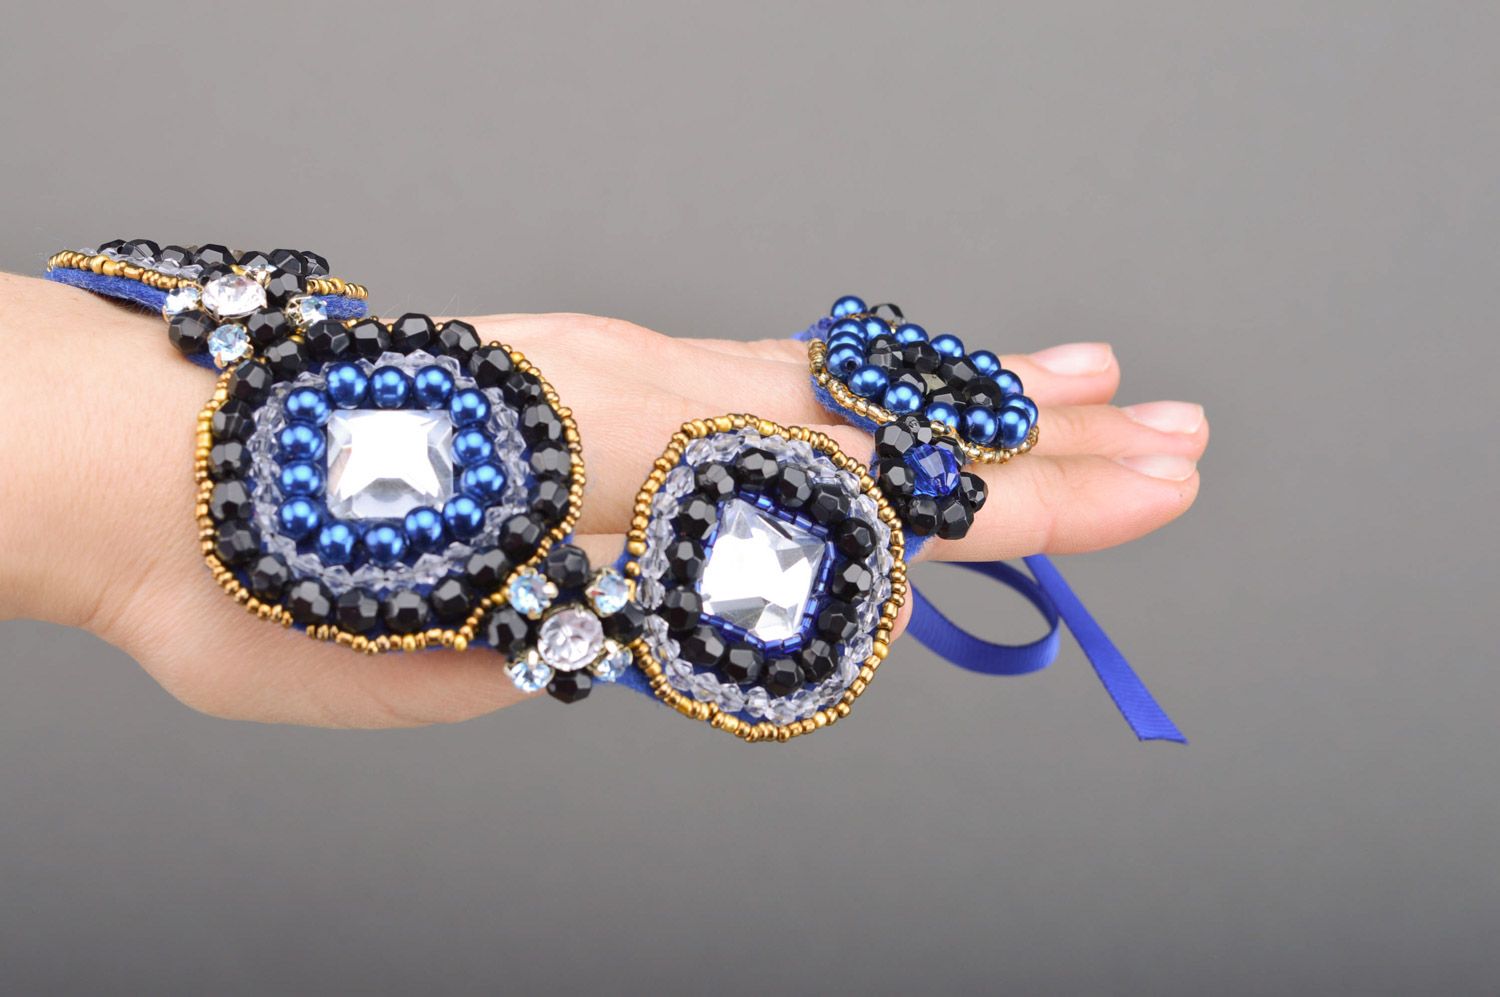 Grand collier bleu feutre perles fantaisie fait main Mille et Une Nuits photo 4